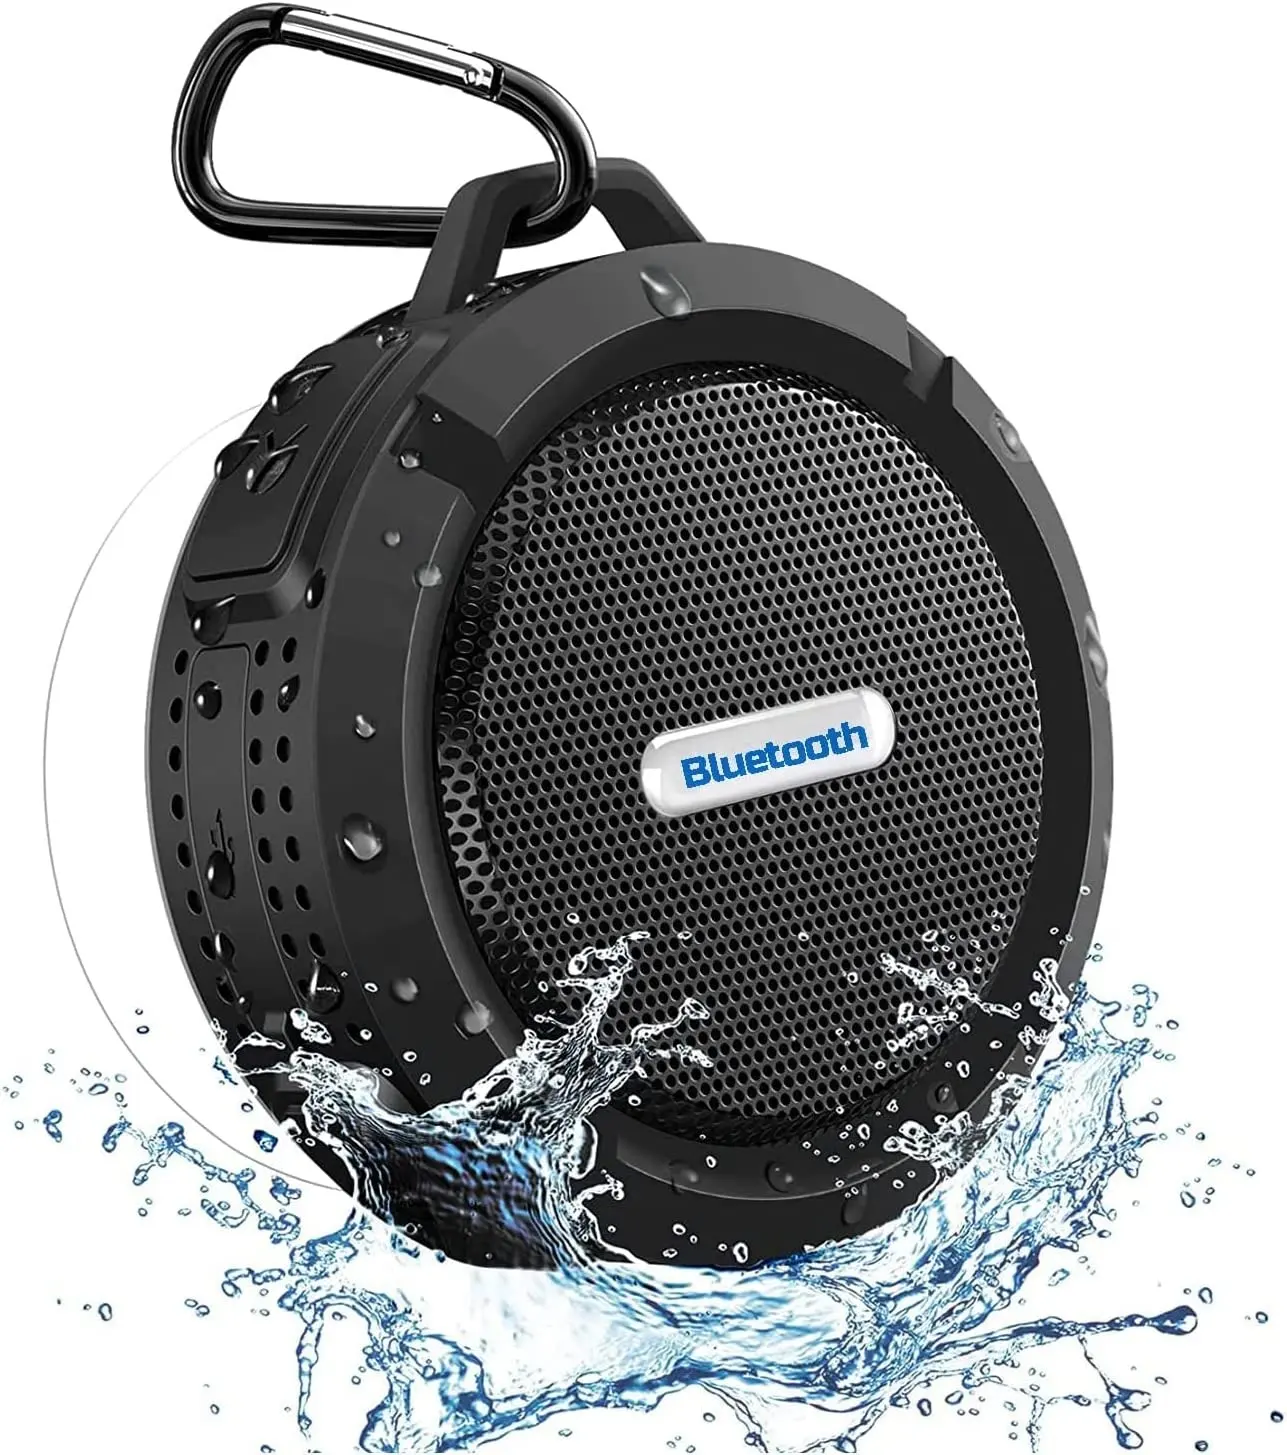 Mini-Dusch lautsprecher, wasserdichte tragbare Bluetooth-Lautsprecher IP65 und echte drahtlose Stereo-und Dsp-Technologie, 6 Stunden Wiedergabe